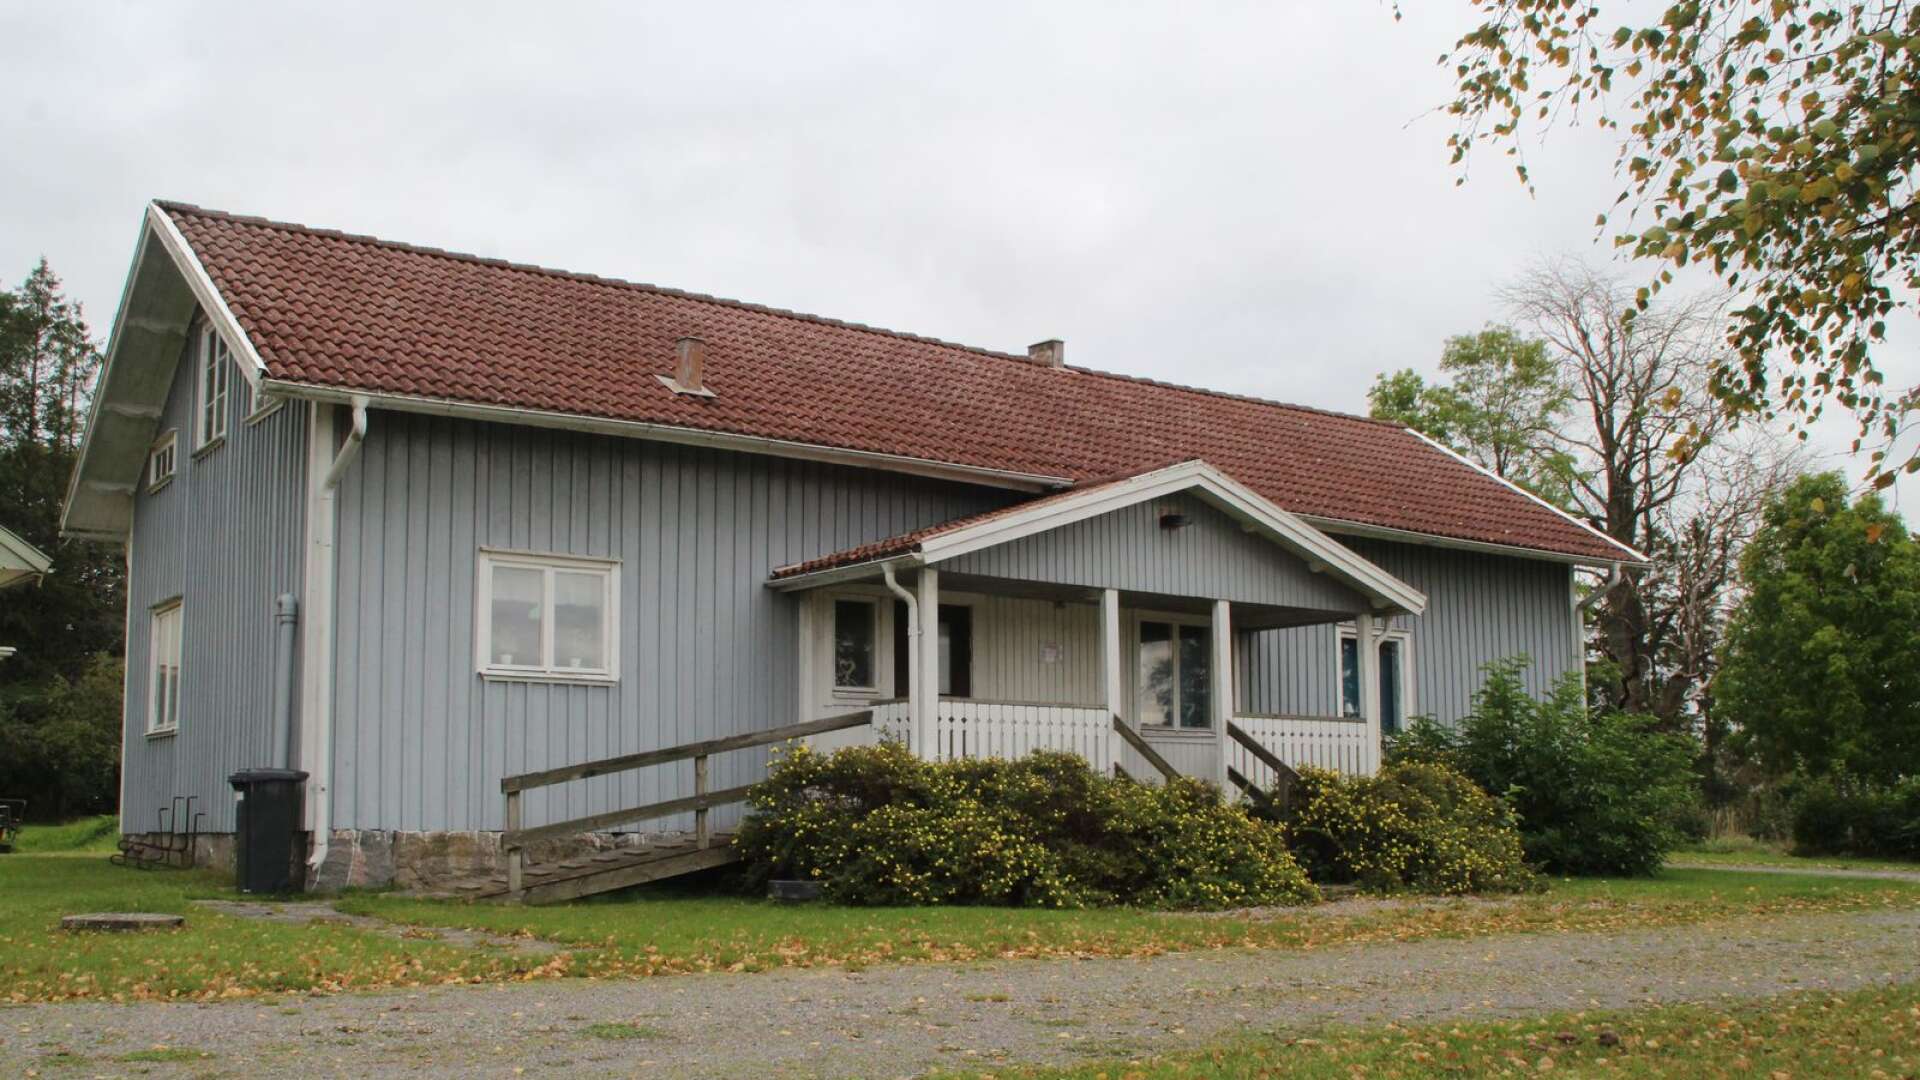 Hålegården är bygdens samlingsplats och drivs av Håle intresseförening.